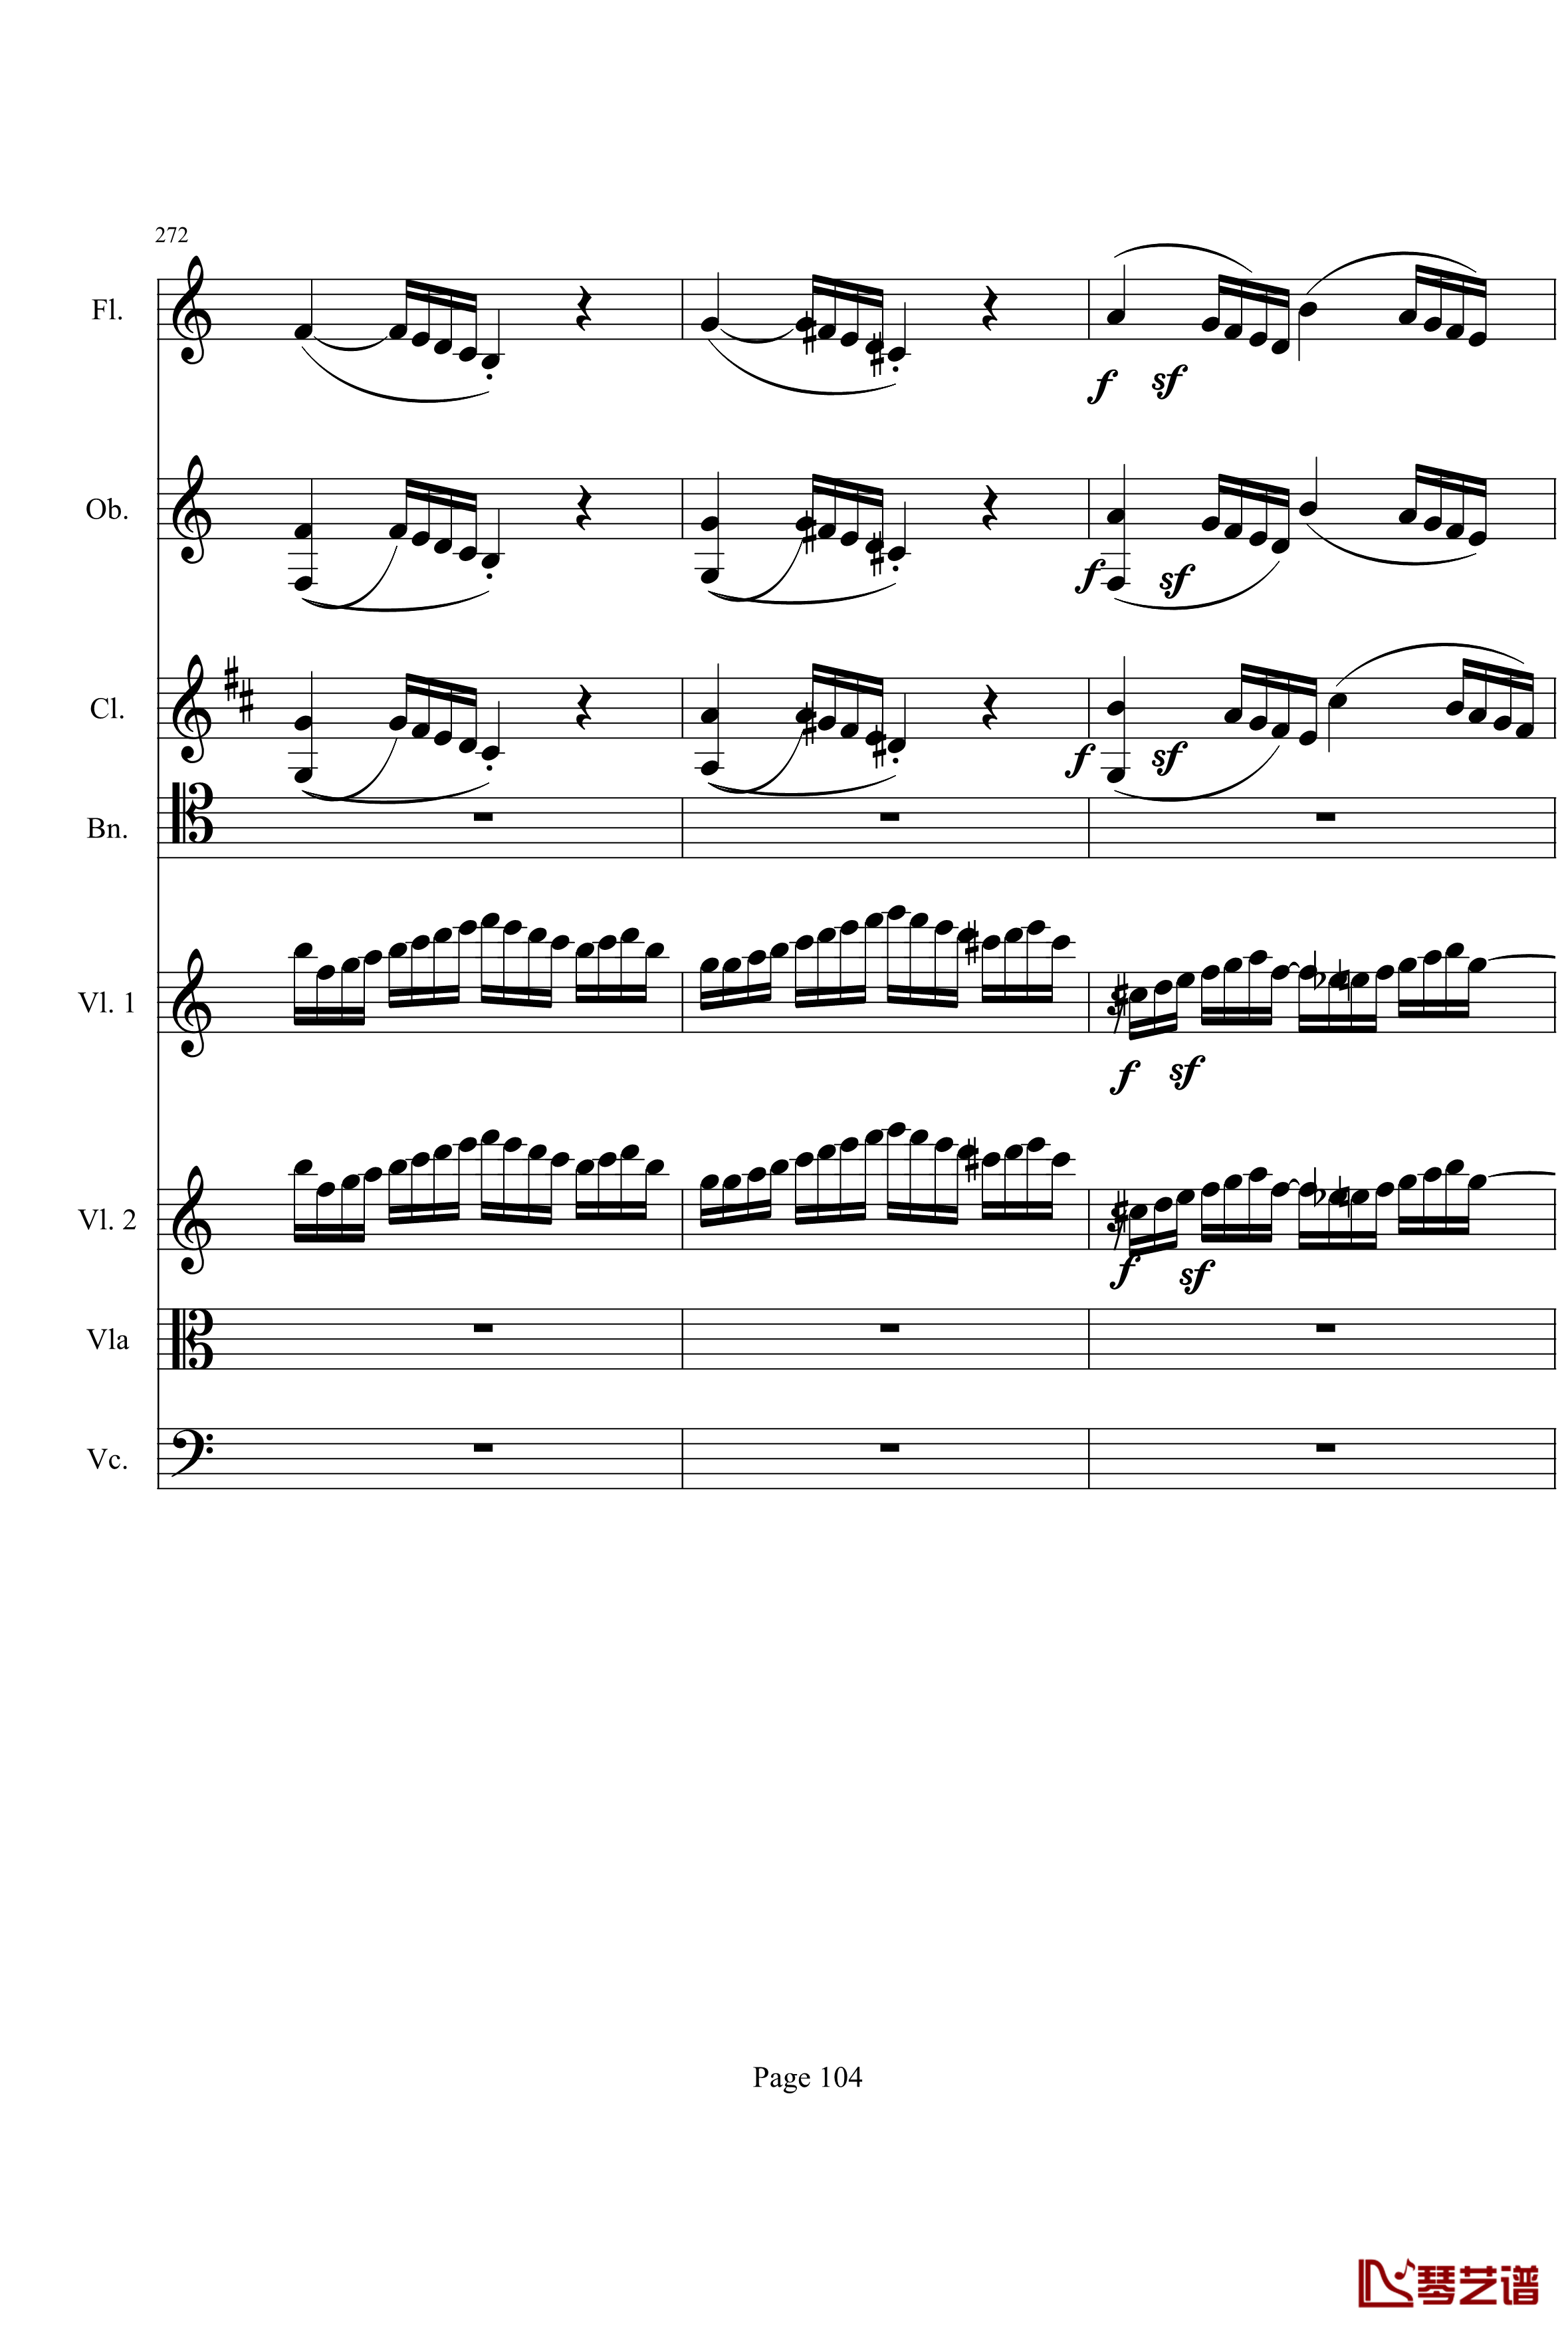 奏鸣曲之交响钢琴谱-第21-Ⅰ-贝多芬-beethoven104